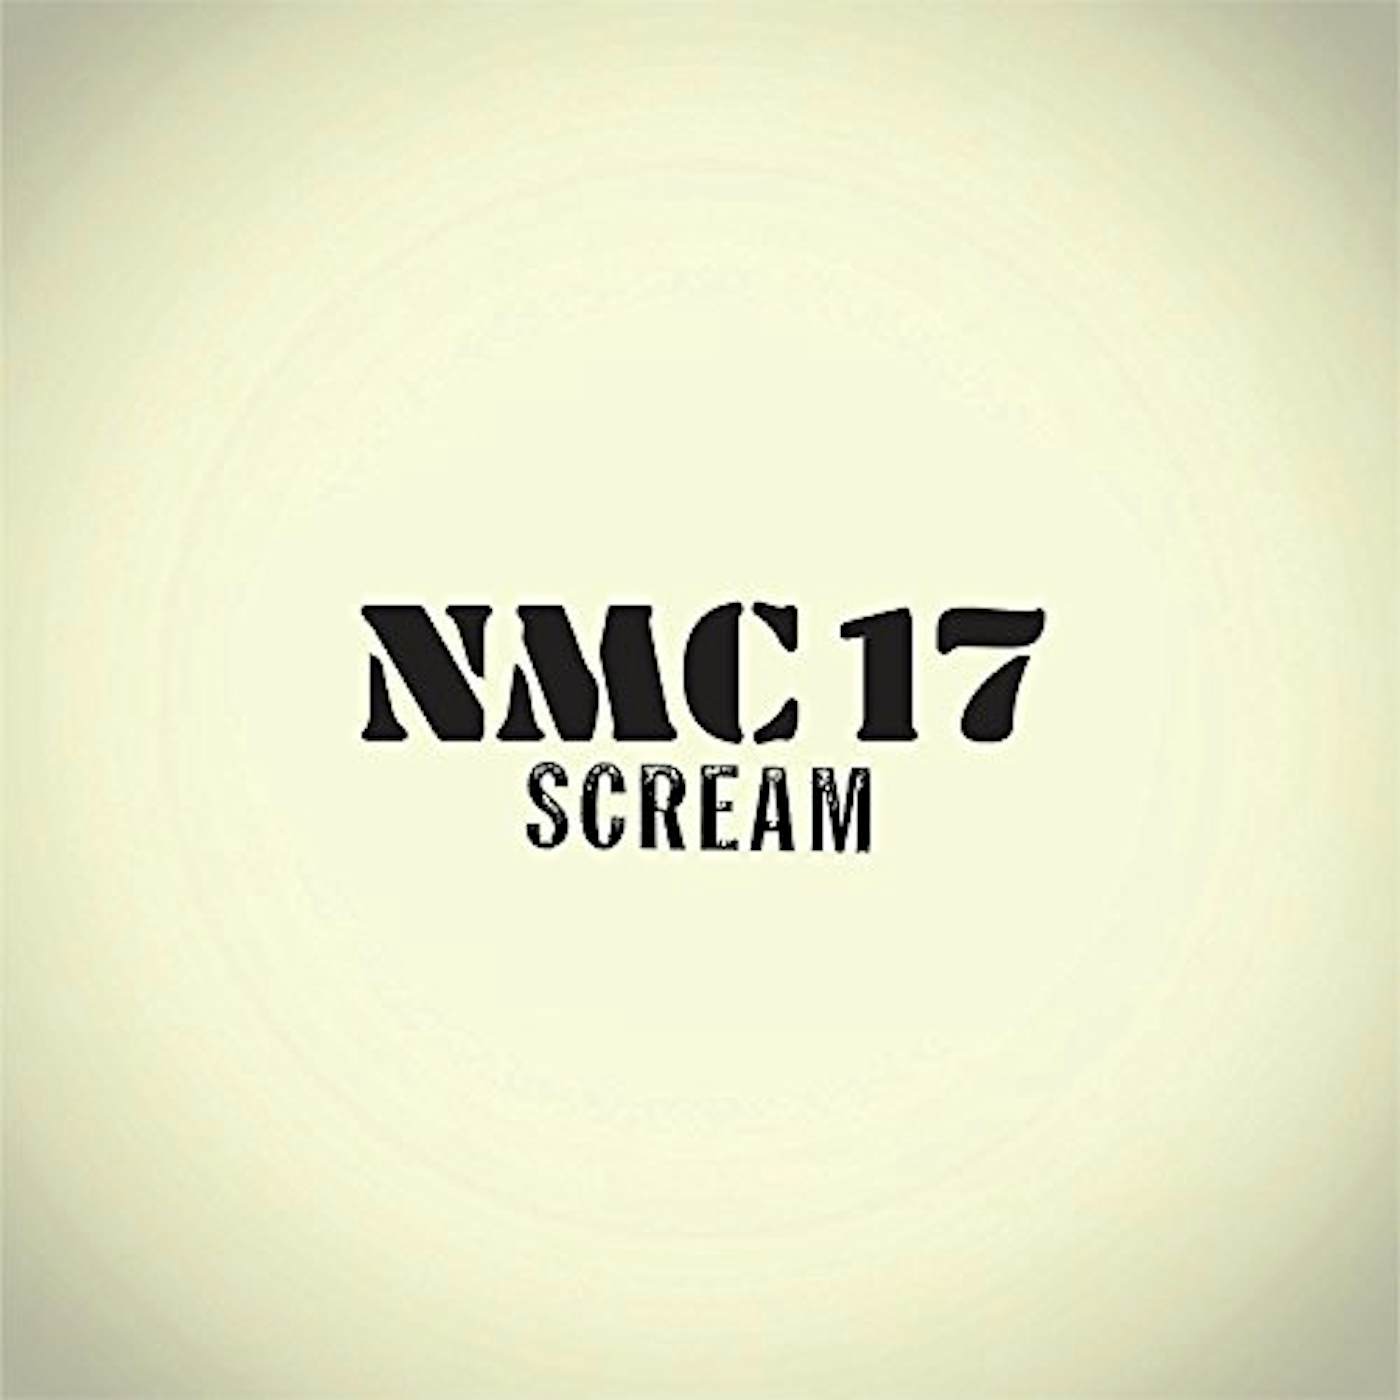 Scream Nmc17 Vinyl Record